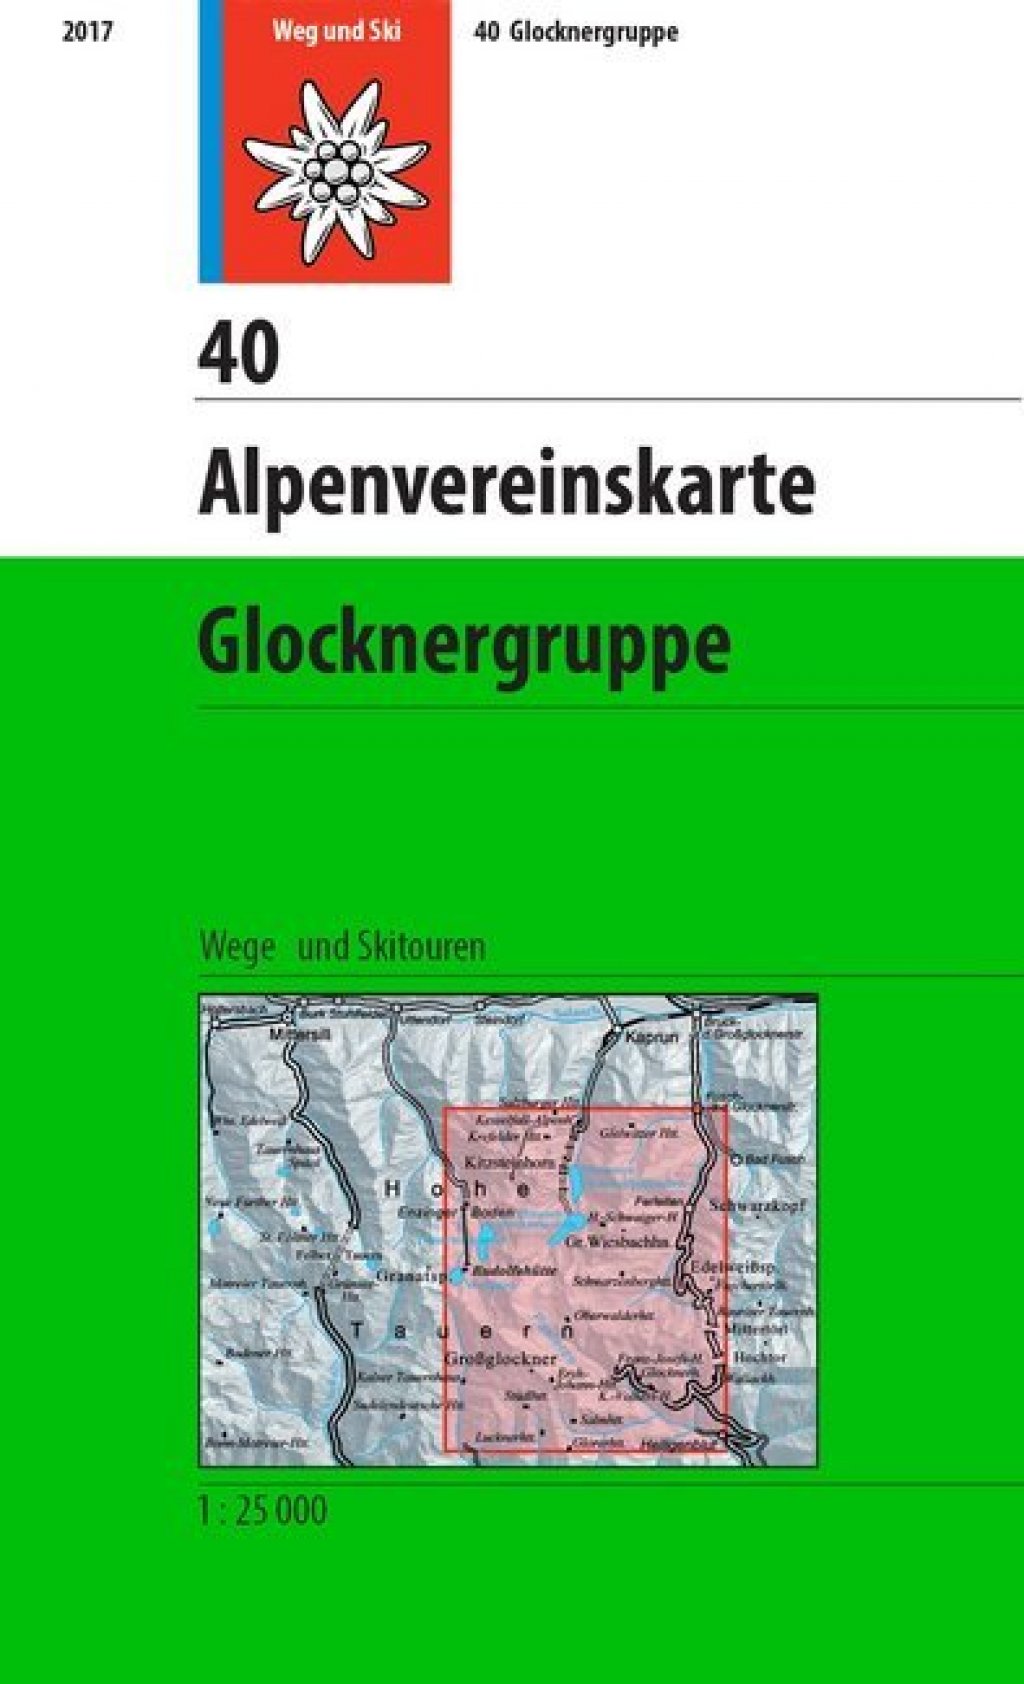 Alpenvereinskarte Glocknergruppe.   Wege und Skitouren.